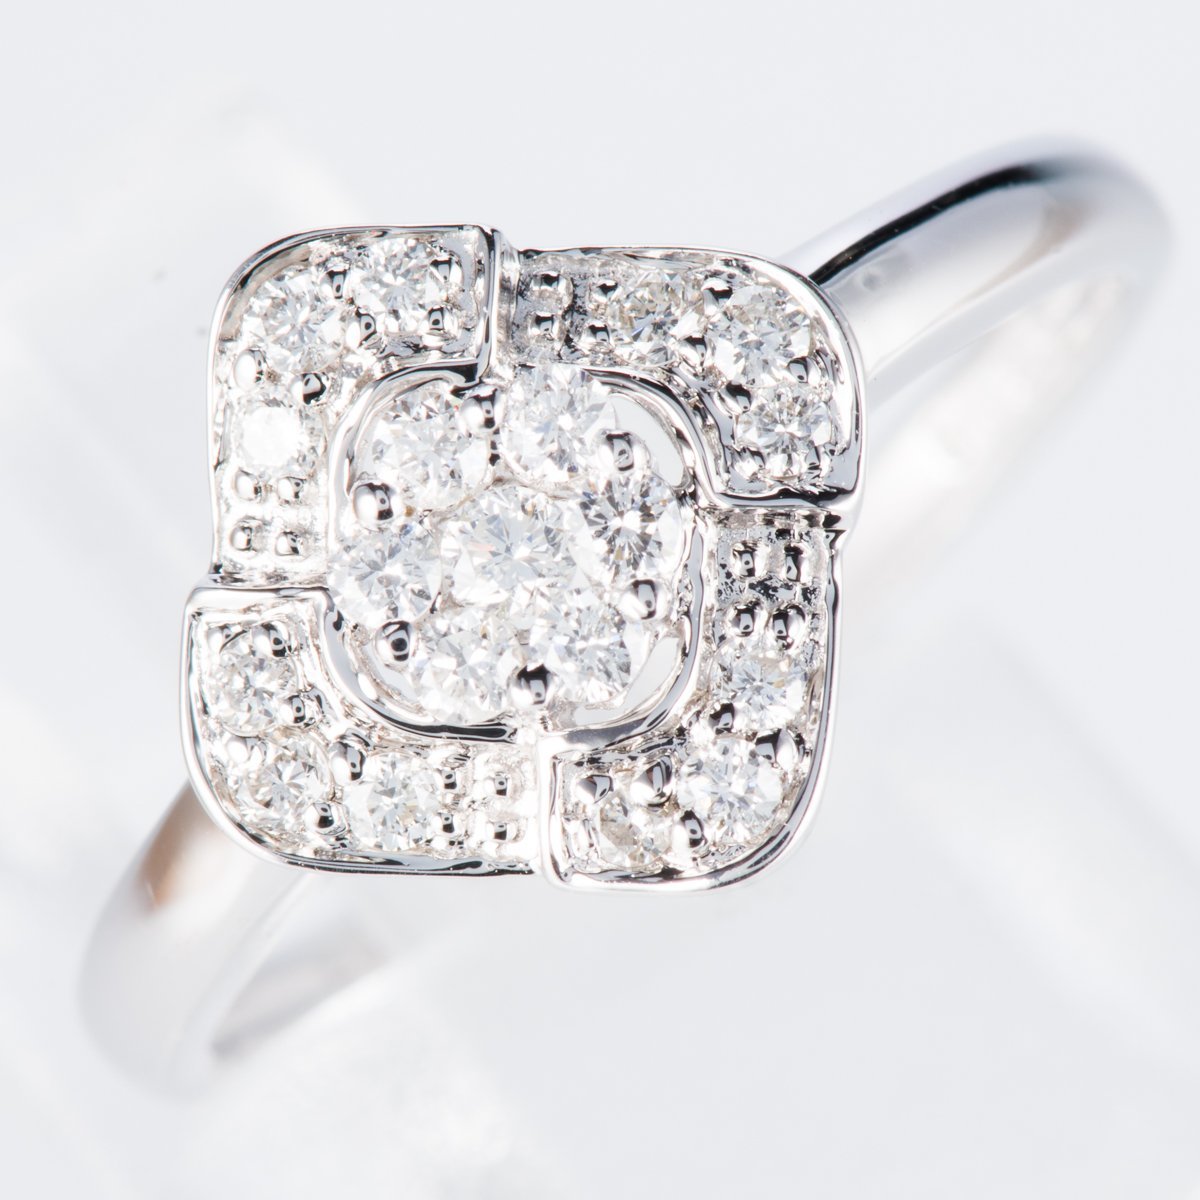 売れ筋商品 可愛らしいダイヤモンドを使用したシンプルで合わせやすいデザインのホワイトゴールド製ダイヤモンドリング(D0.25ct K18WG) ホワイトゴールド台